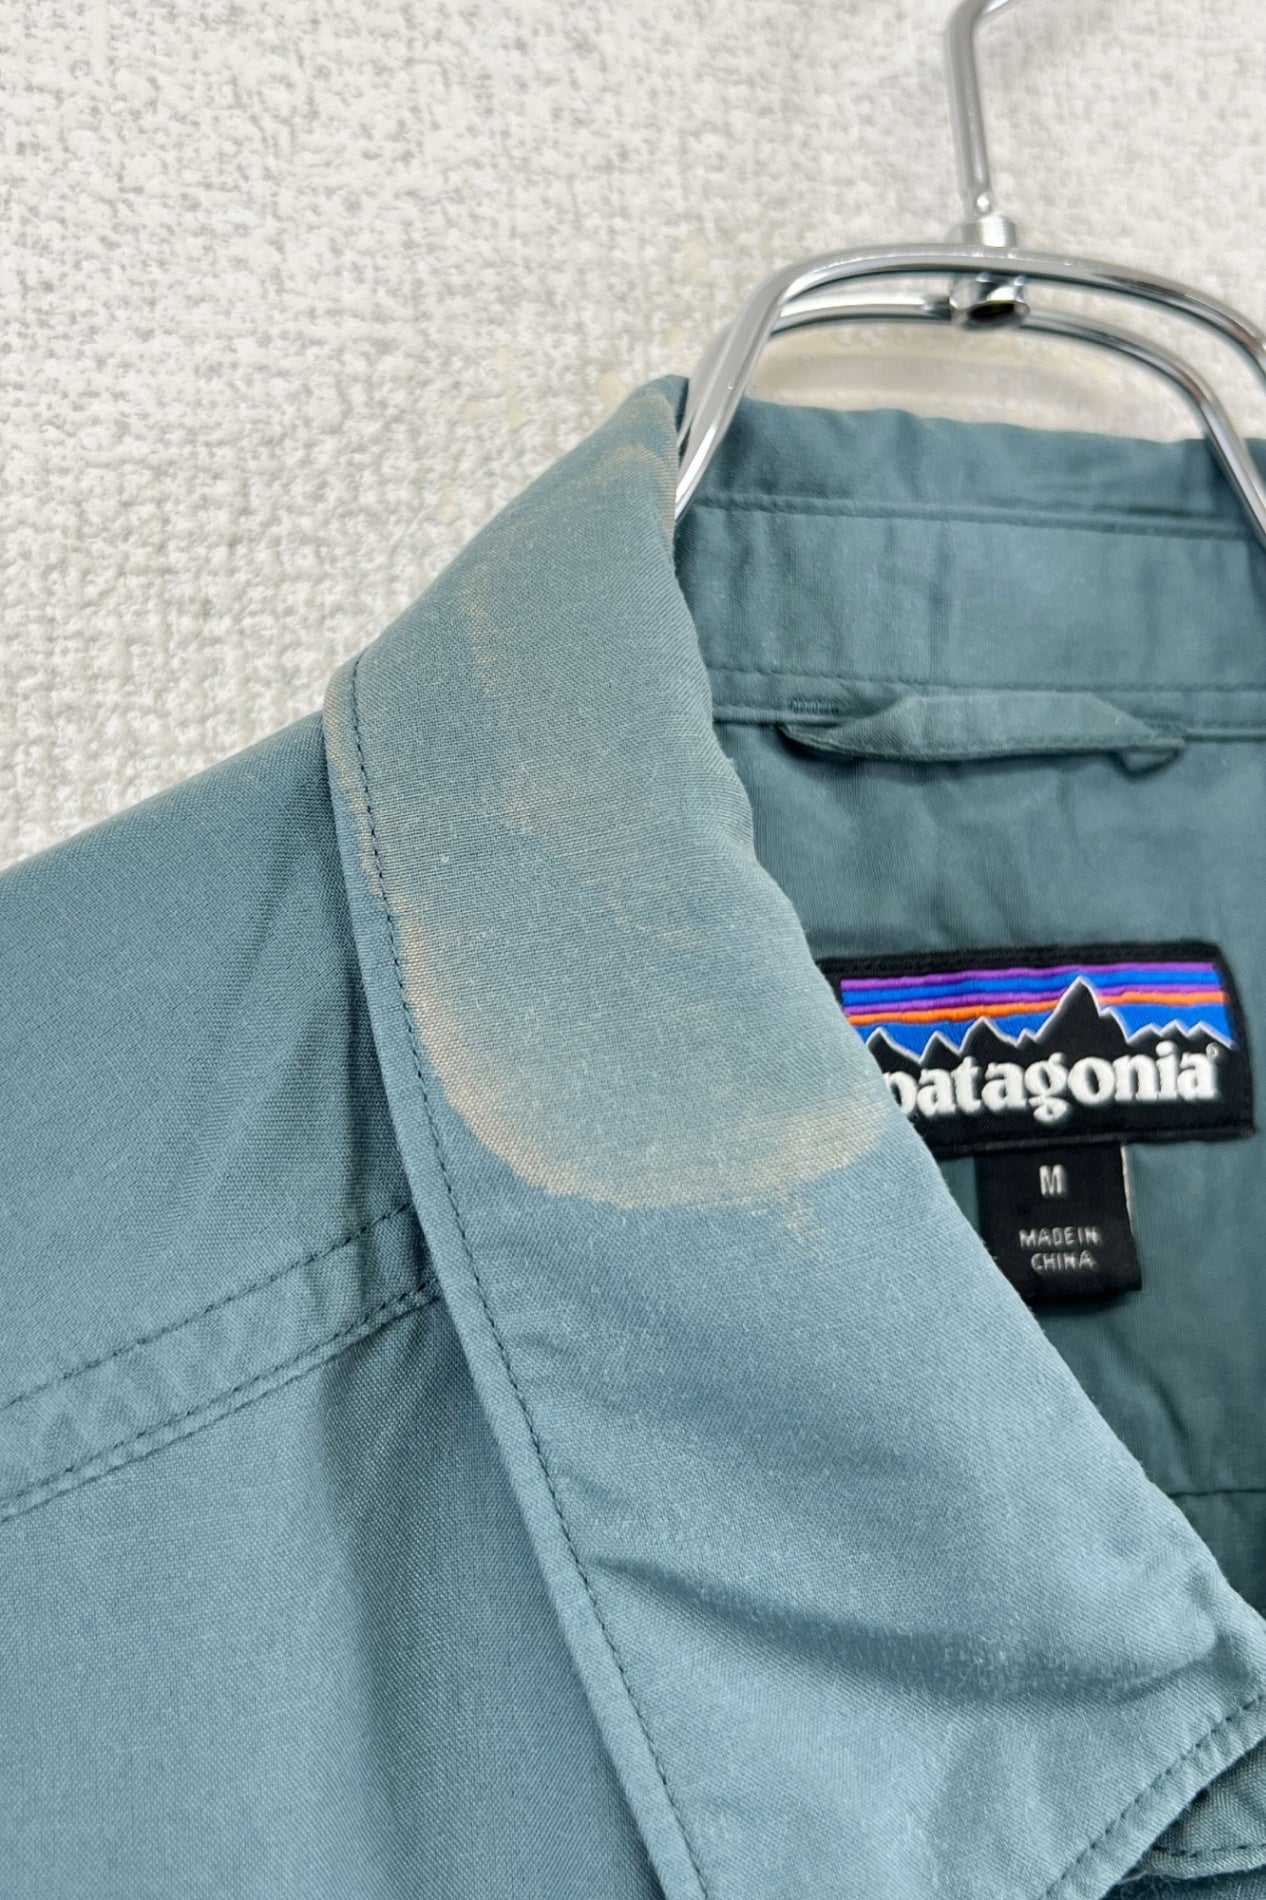 patagonia shirt